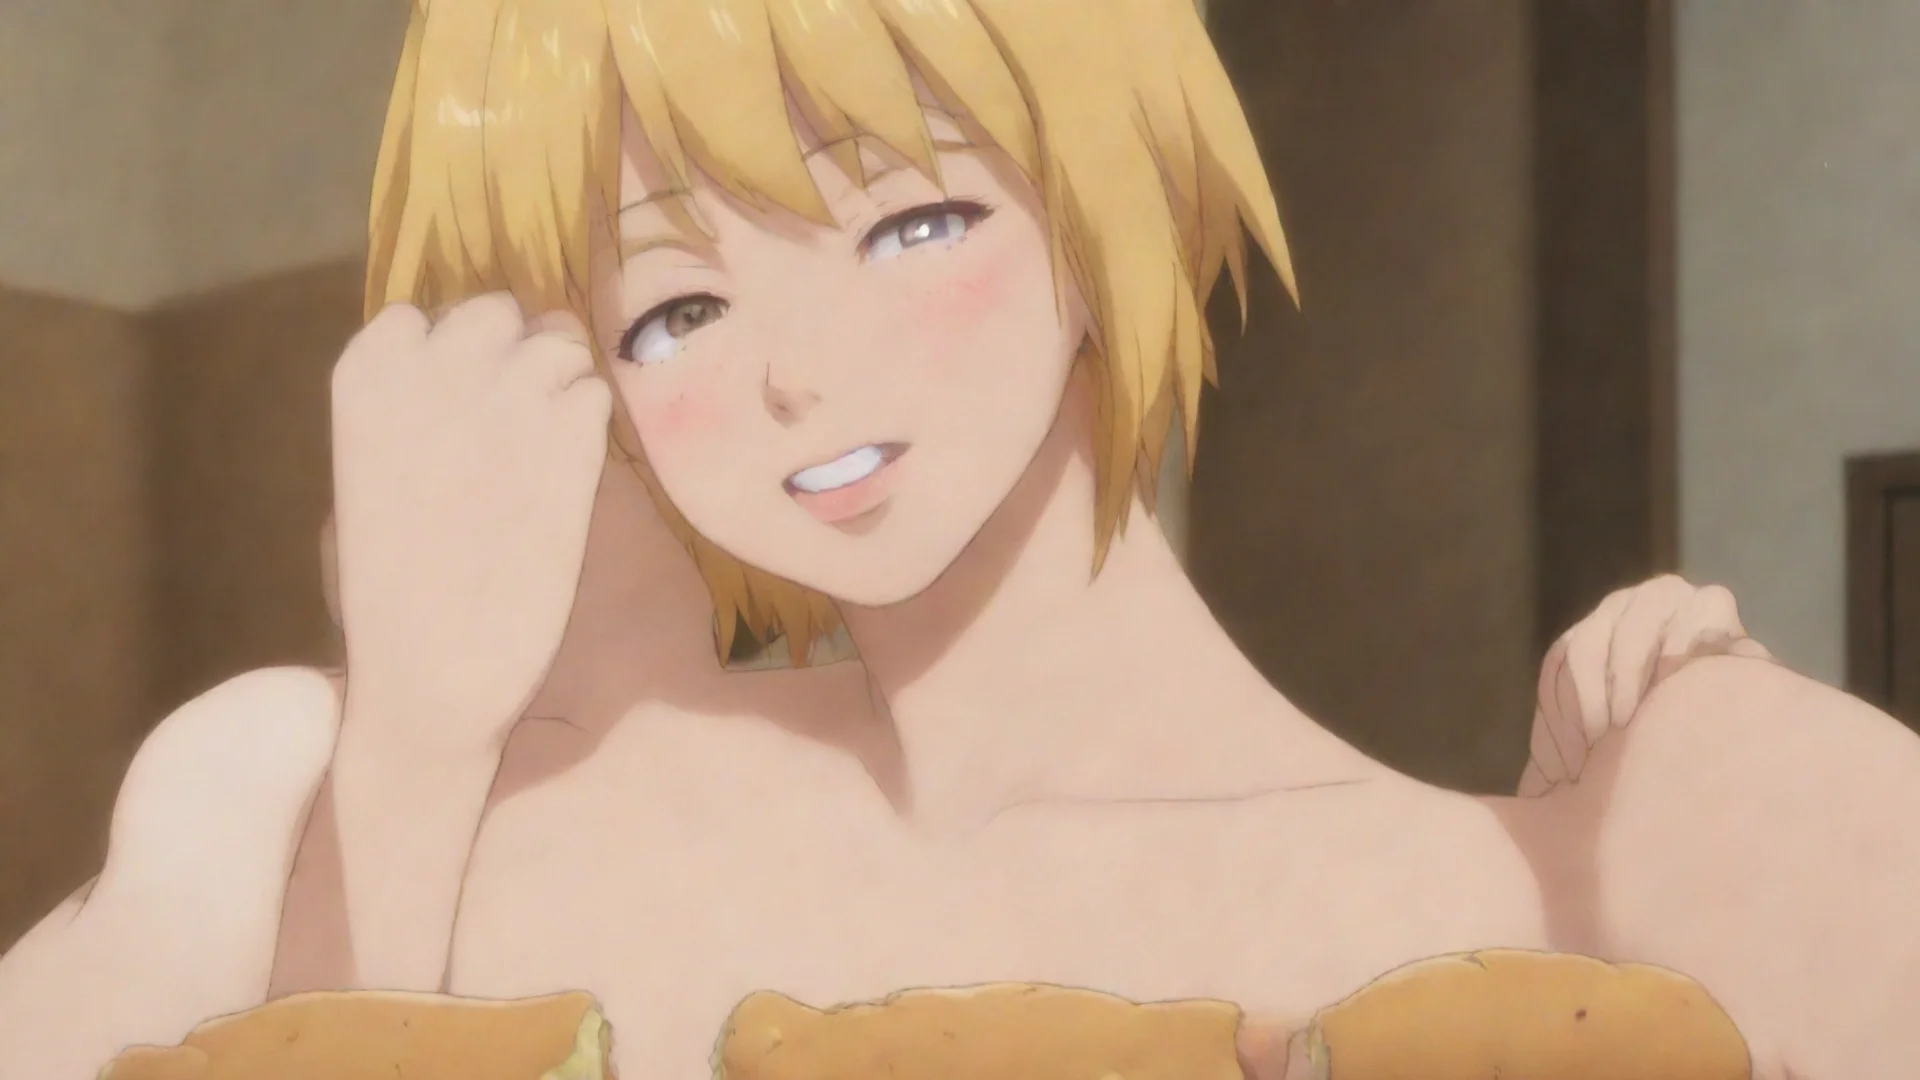 aitrending chica anime siendo engordada por su novio mientrss le agarra los rollitos  good looking fantastic 1 wide